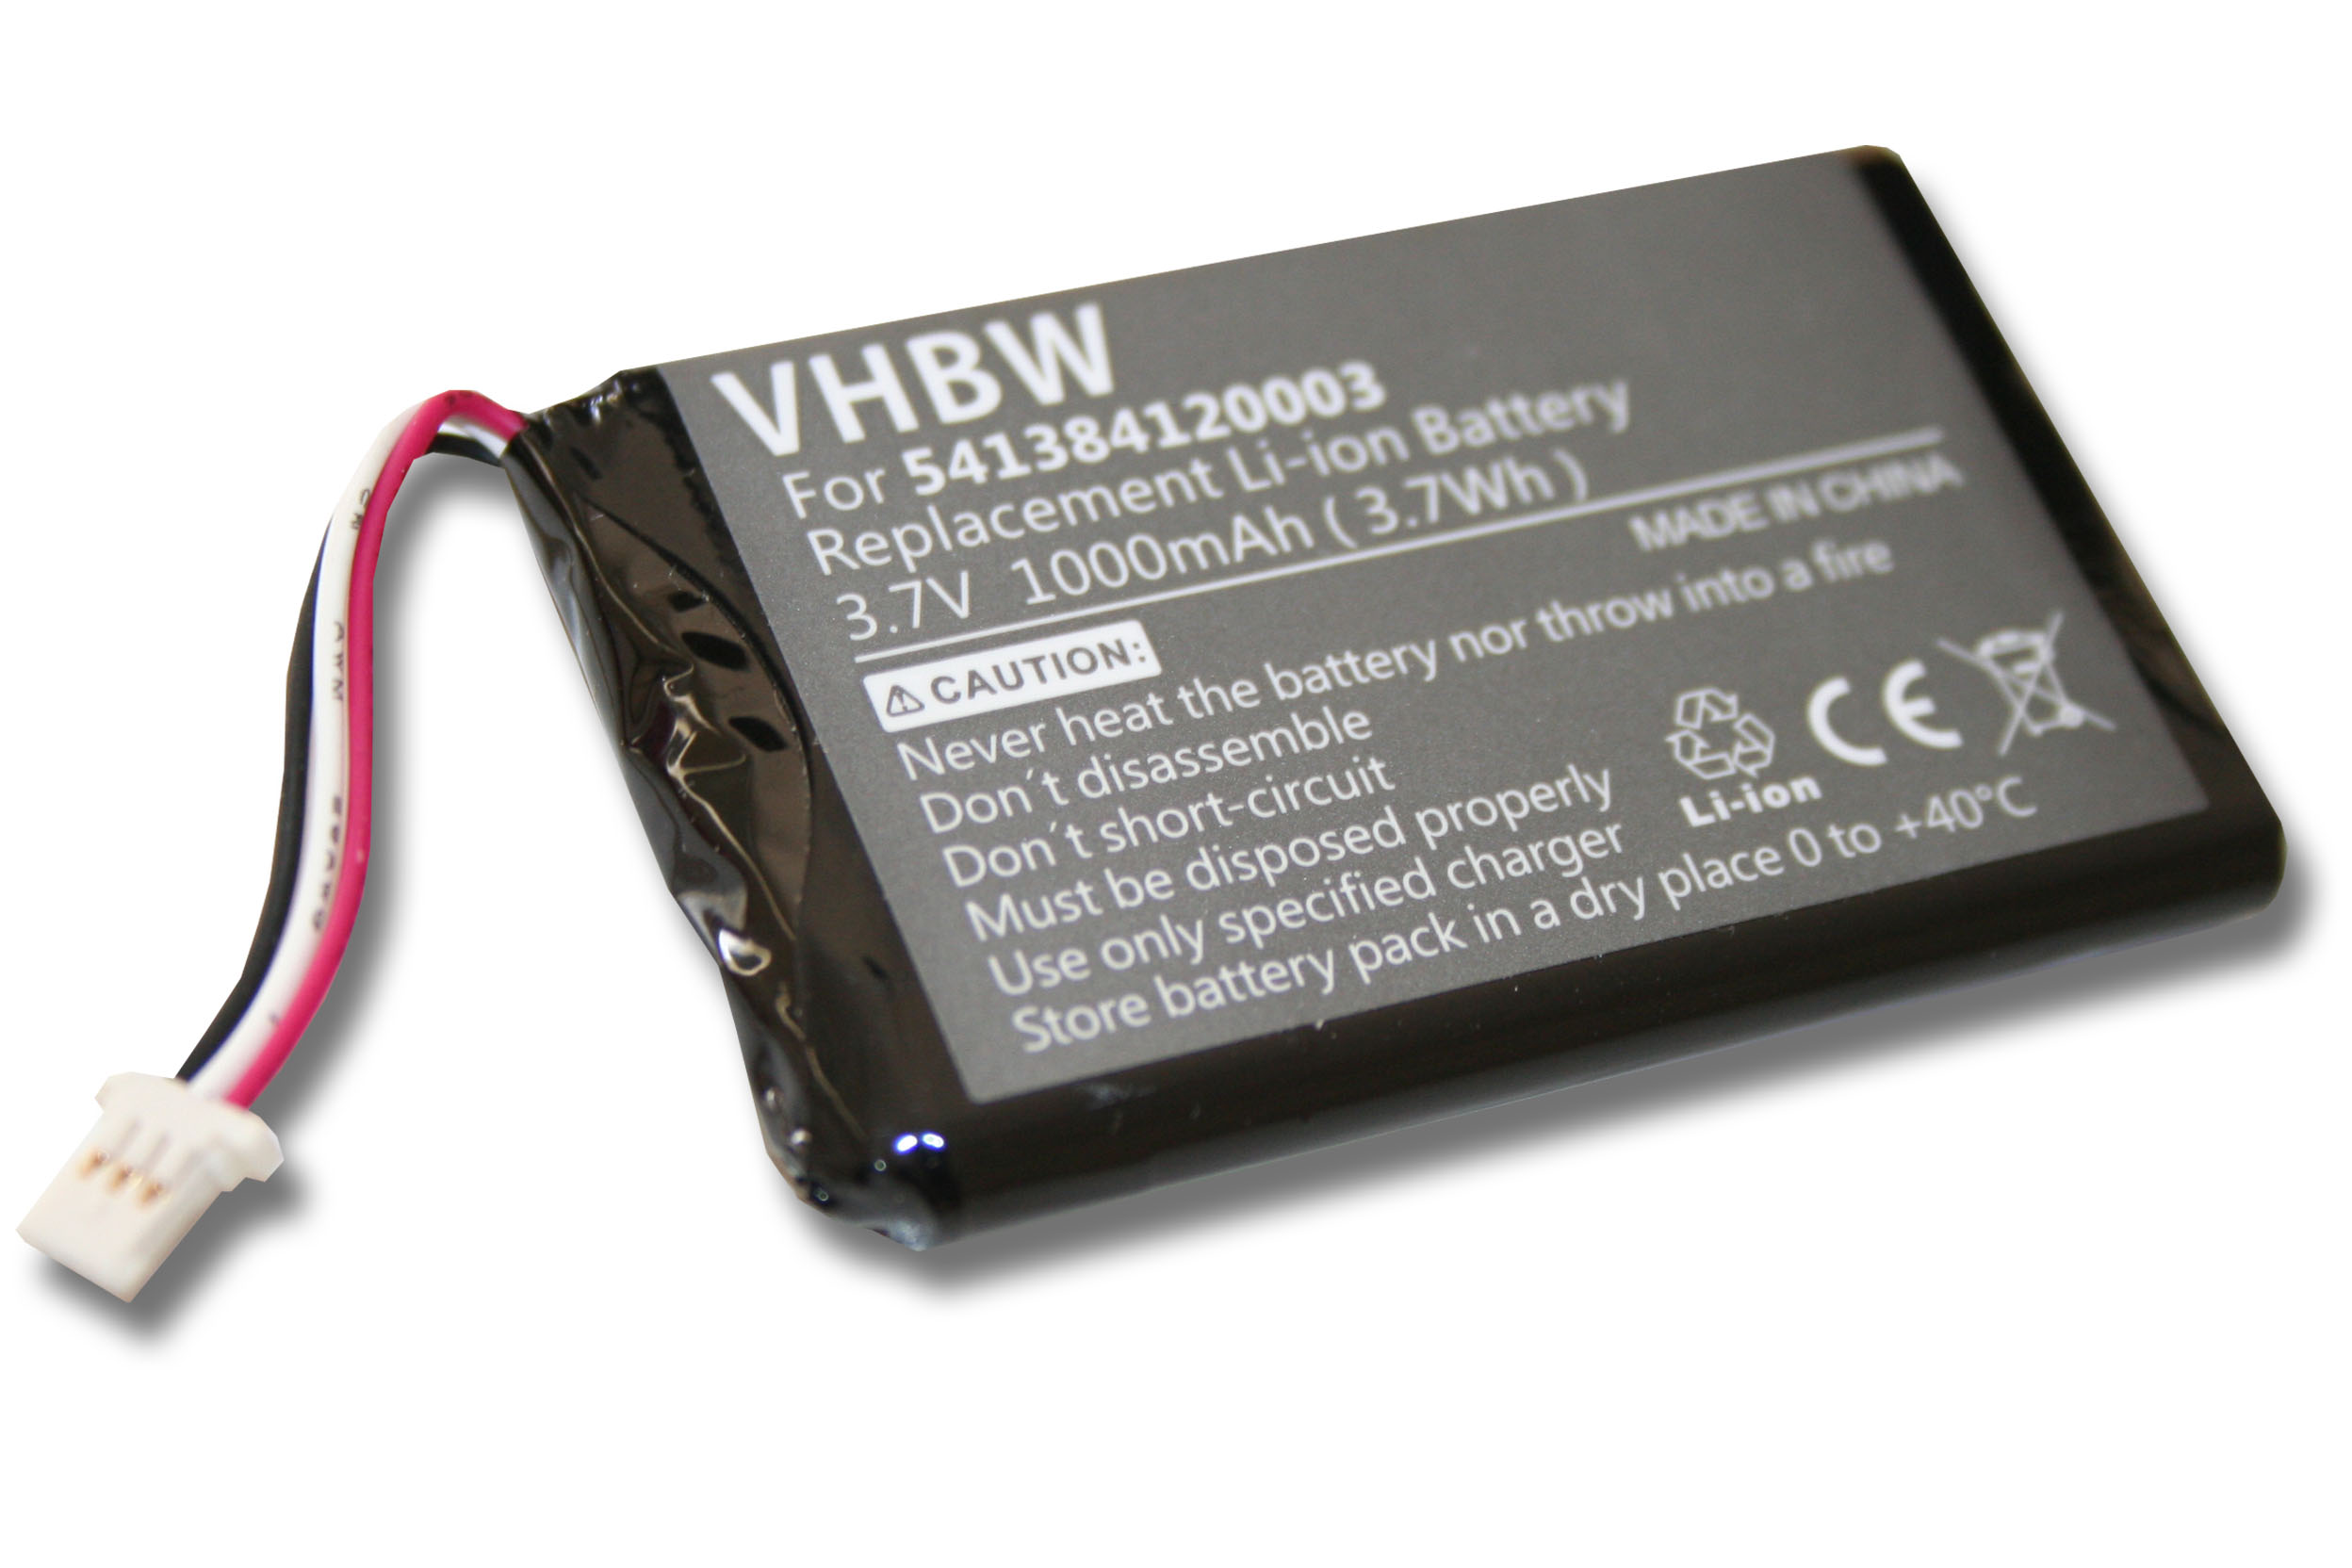 VHBW Ersatz für Navigon 1000 Volt, mAh für Li-Ion Akku, JS541384120002, JS541384120003 3.7